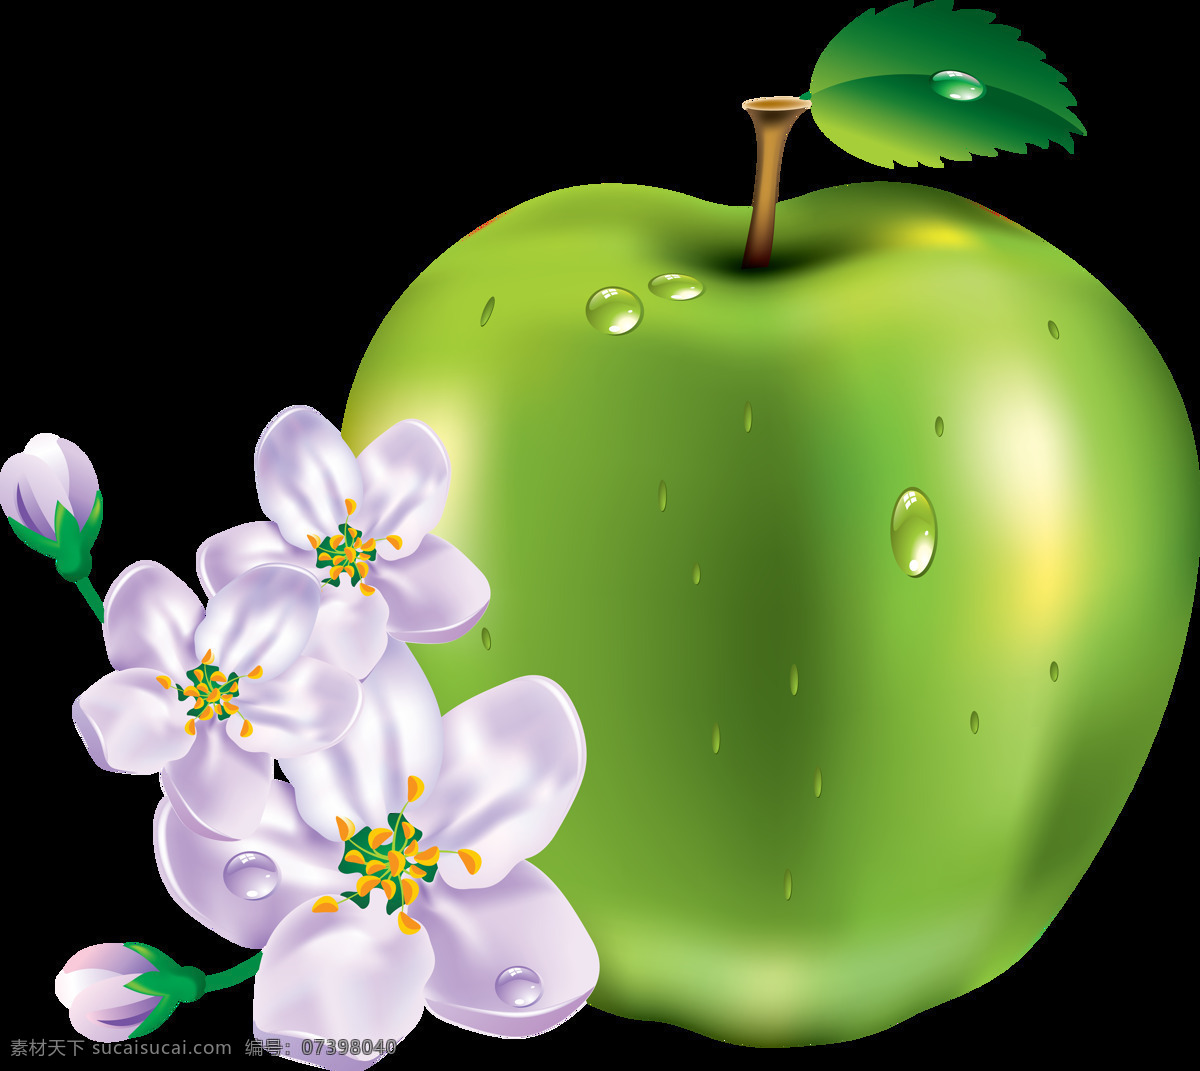 漂亮 鲜花 苹果 免 抠 透明 图 层 苹果图片 苹果照片 青苹果 logo 苹果简笔画 壁纸高清 大苹果 红苹果 苹果梨树 苹果商标 金毛苹果 青苹果榨汁